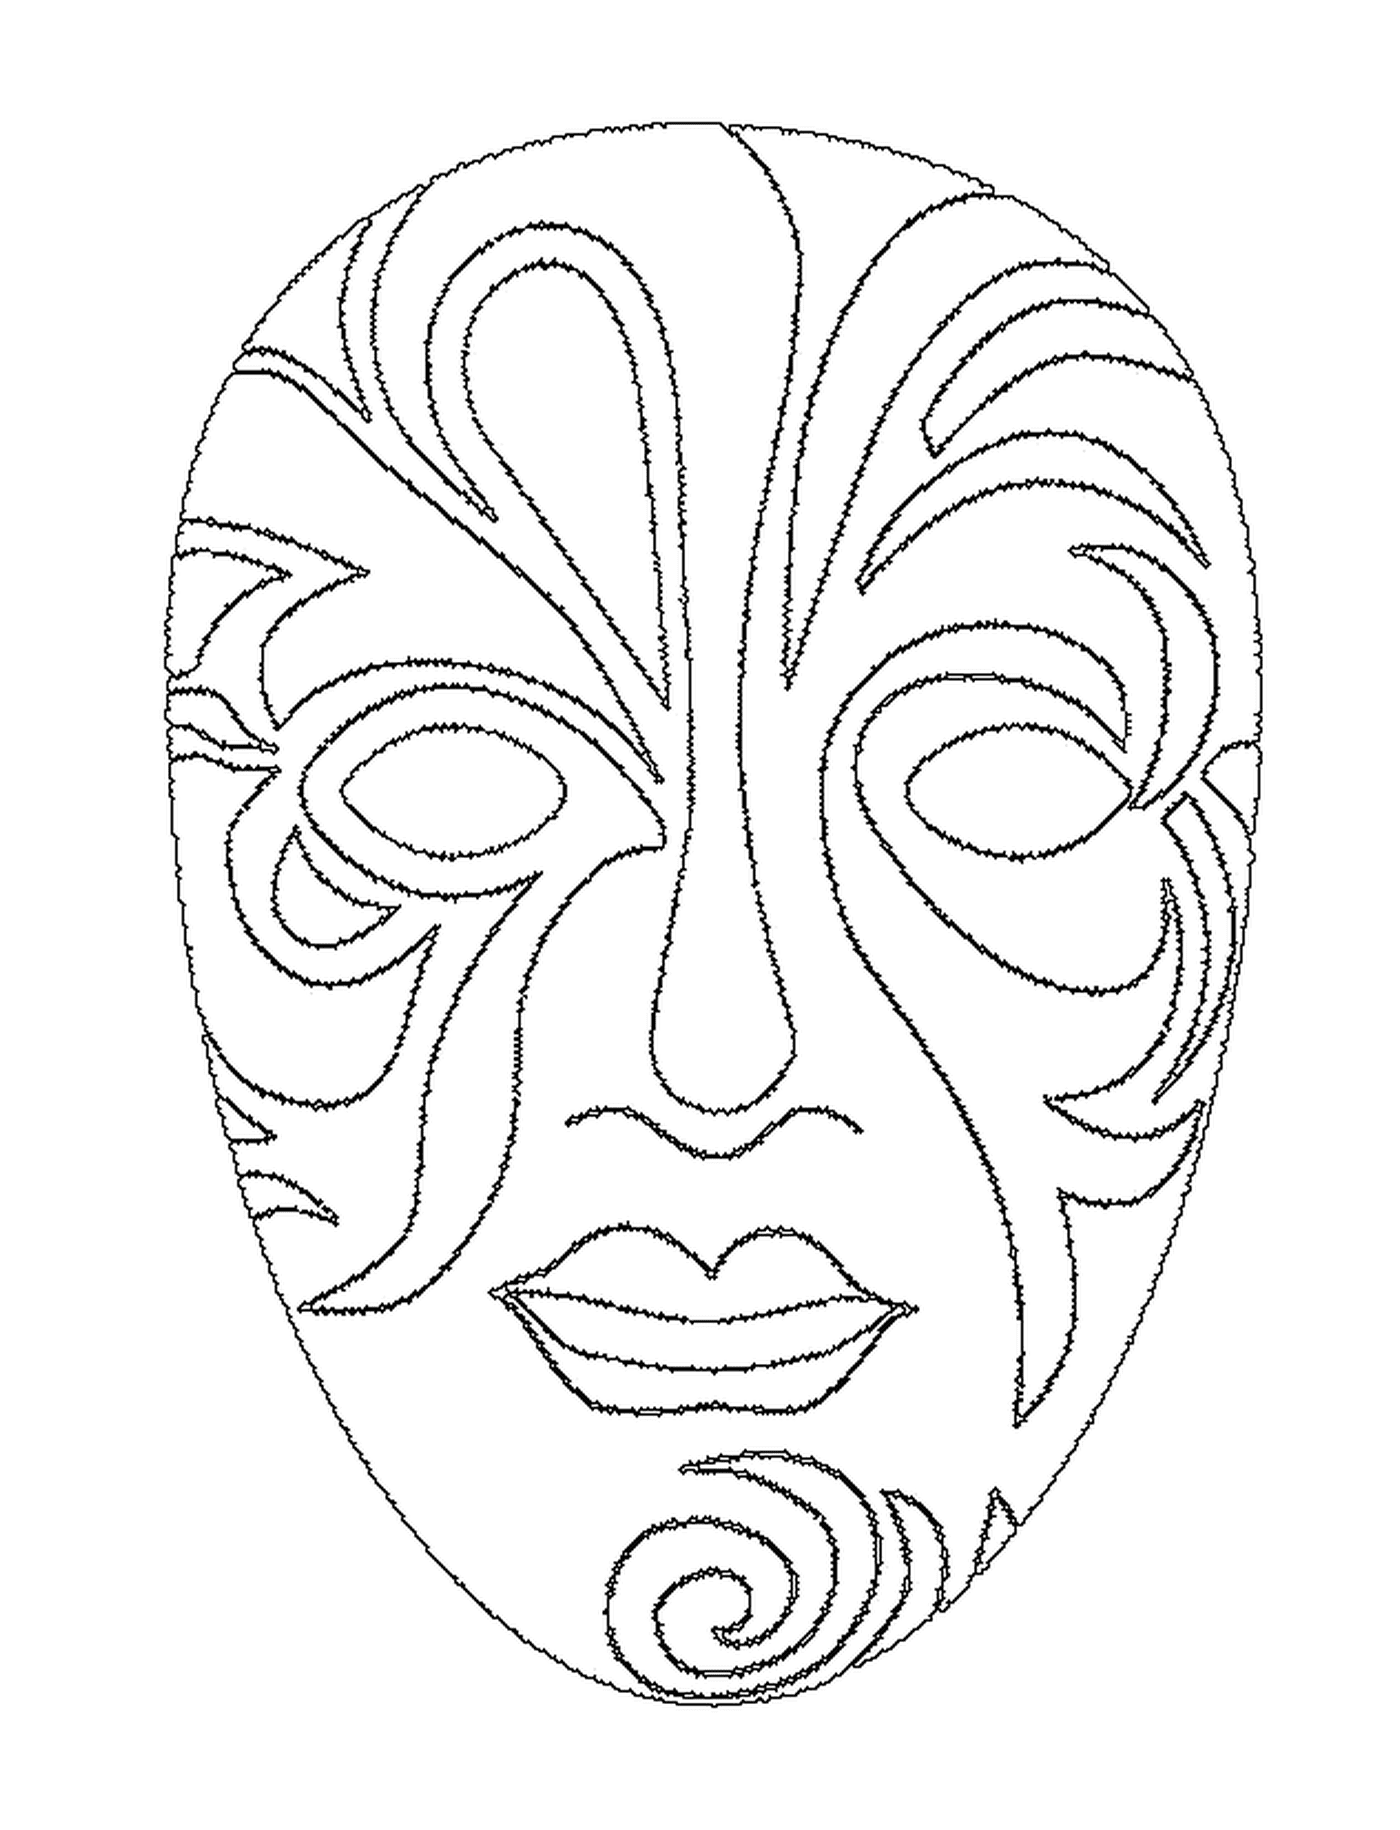   Un joli masque pour le visage pour le carnaval 